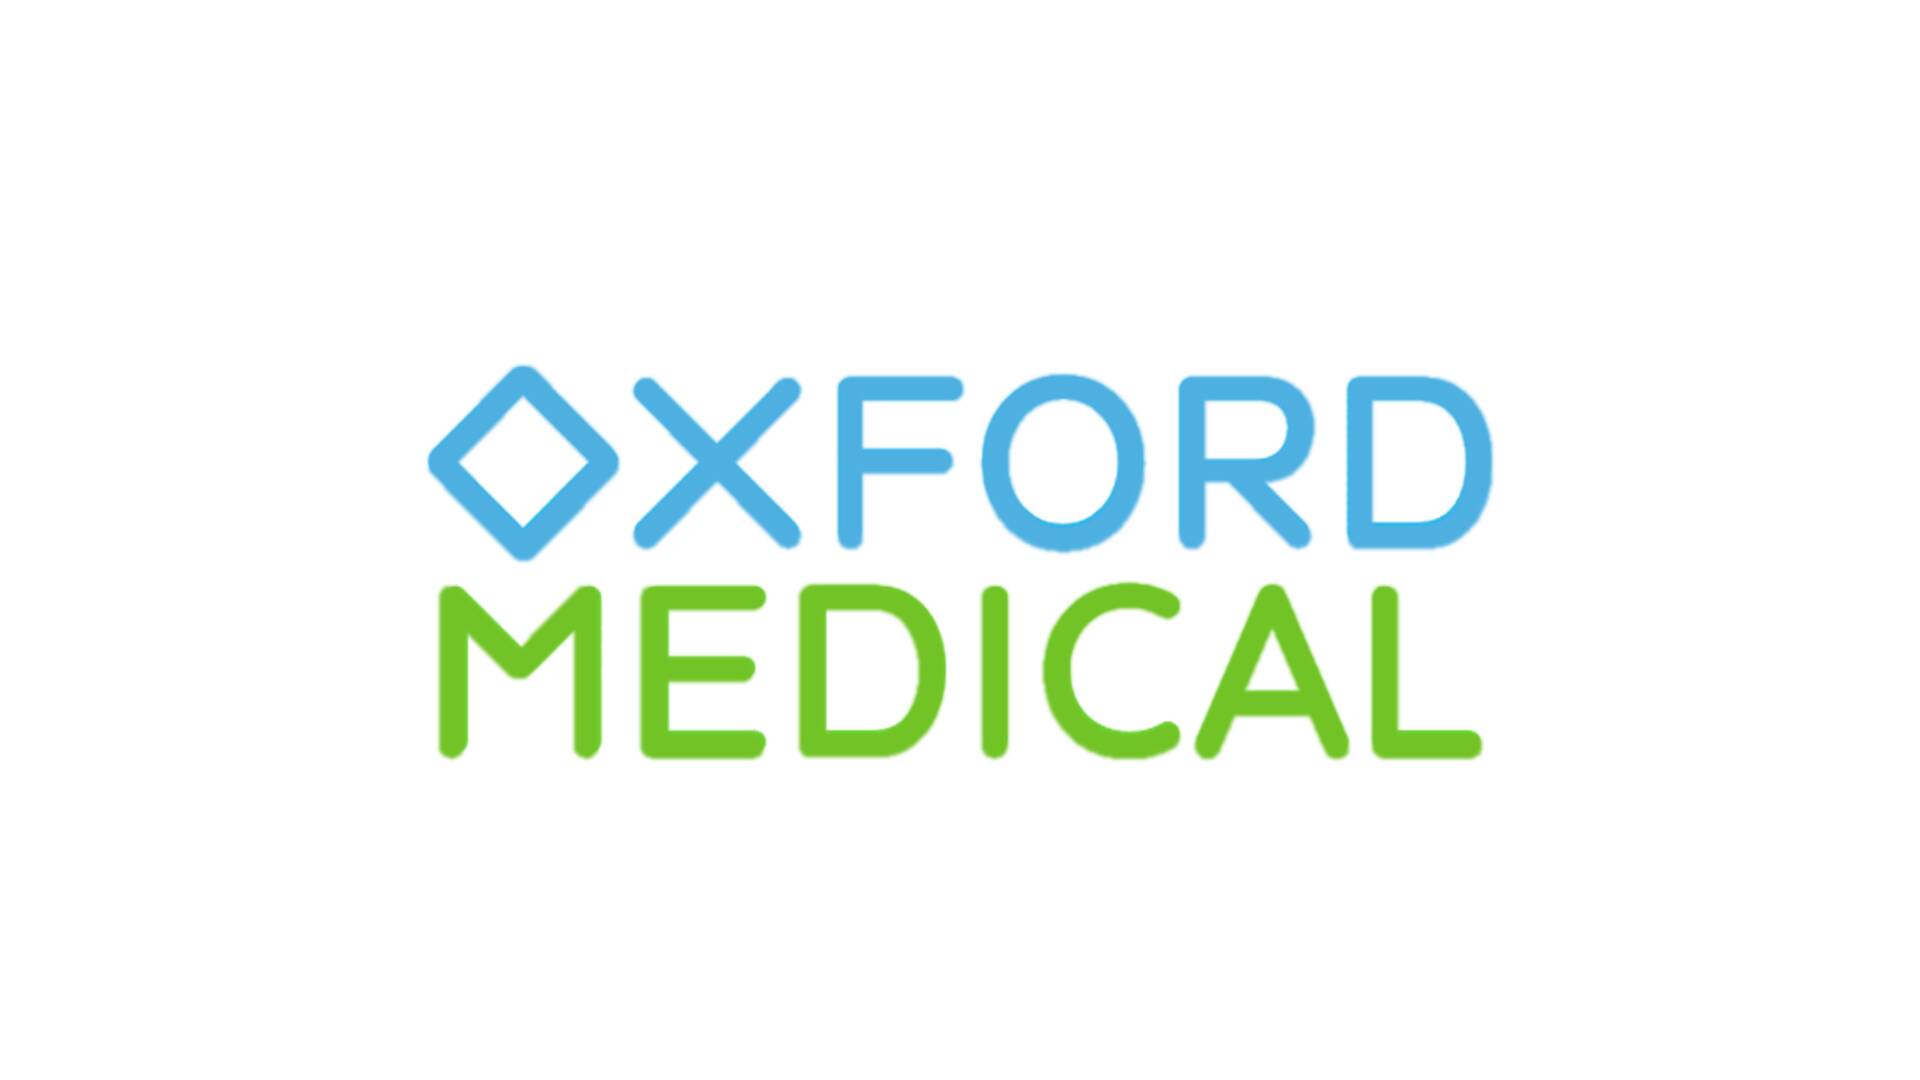 Медичний центр Оксфорд Медікал (Oxford Medical) - клініка в Днепрі на Глинки ДНІПРО: опис, послуги, відгуки, рейтинг, контакти, записатися онлайн на сайті h24.ua